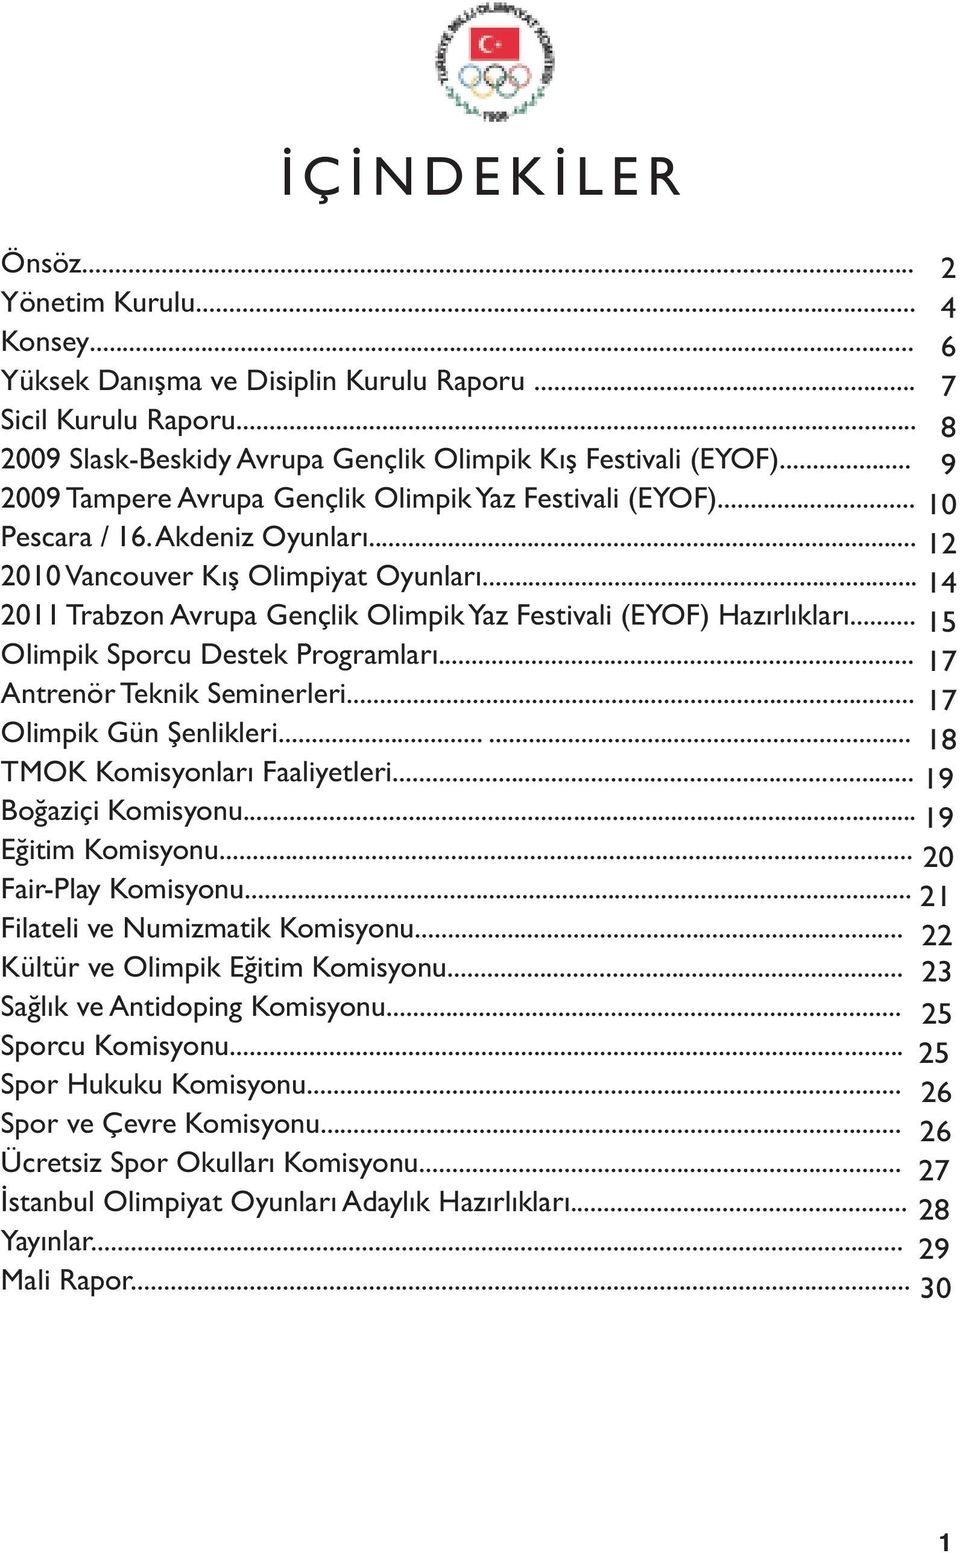 .. 2011 Trabzon Avrupa Gençlik Olimpik Yaz Festivali (EYOF) Hazırlıkları... Olimpik Sporcu Destek Programları... Antrenör Teknik Seminerleri... Olimpik Gün Şenlikleri...... TMOK Komisyonları Faaliyetleri.